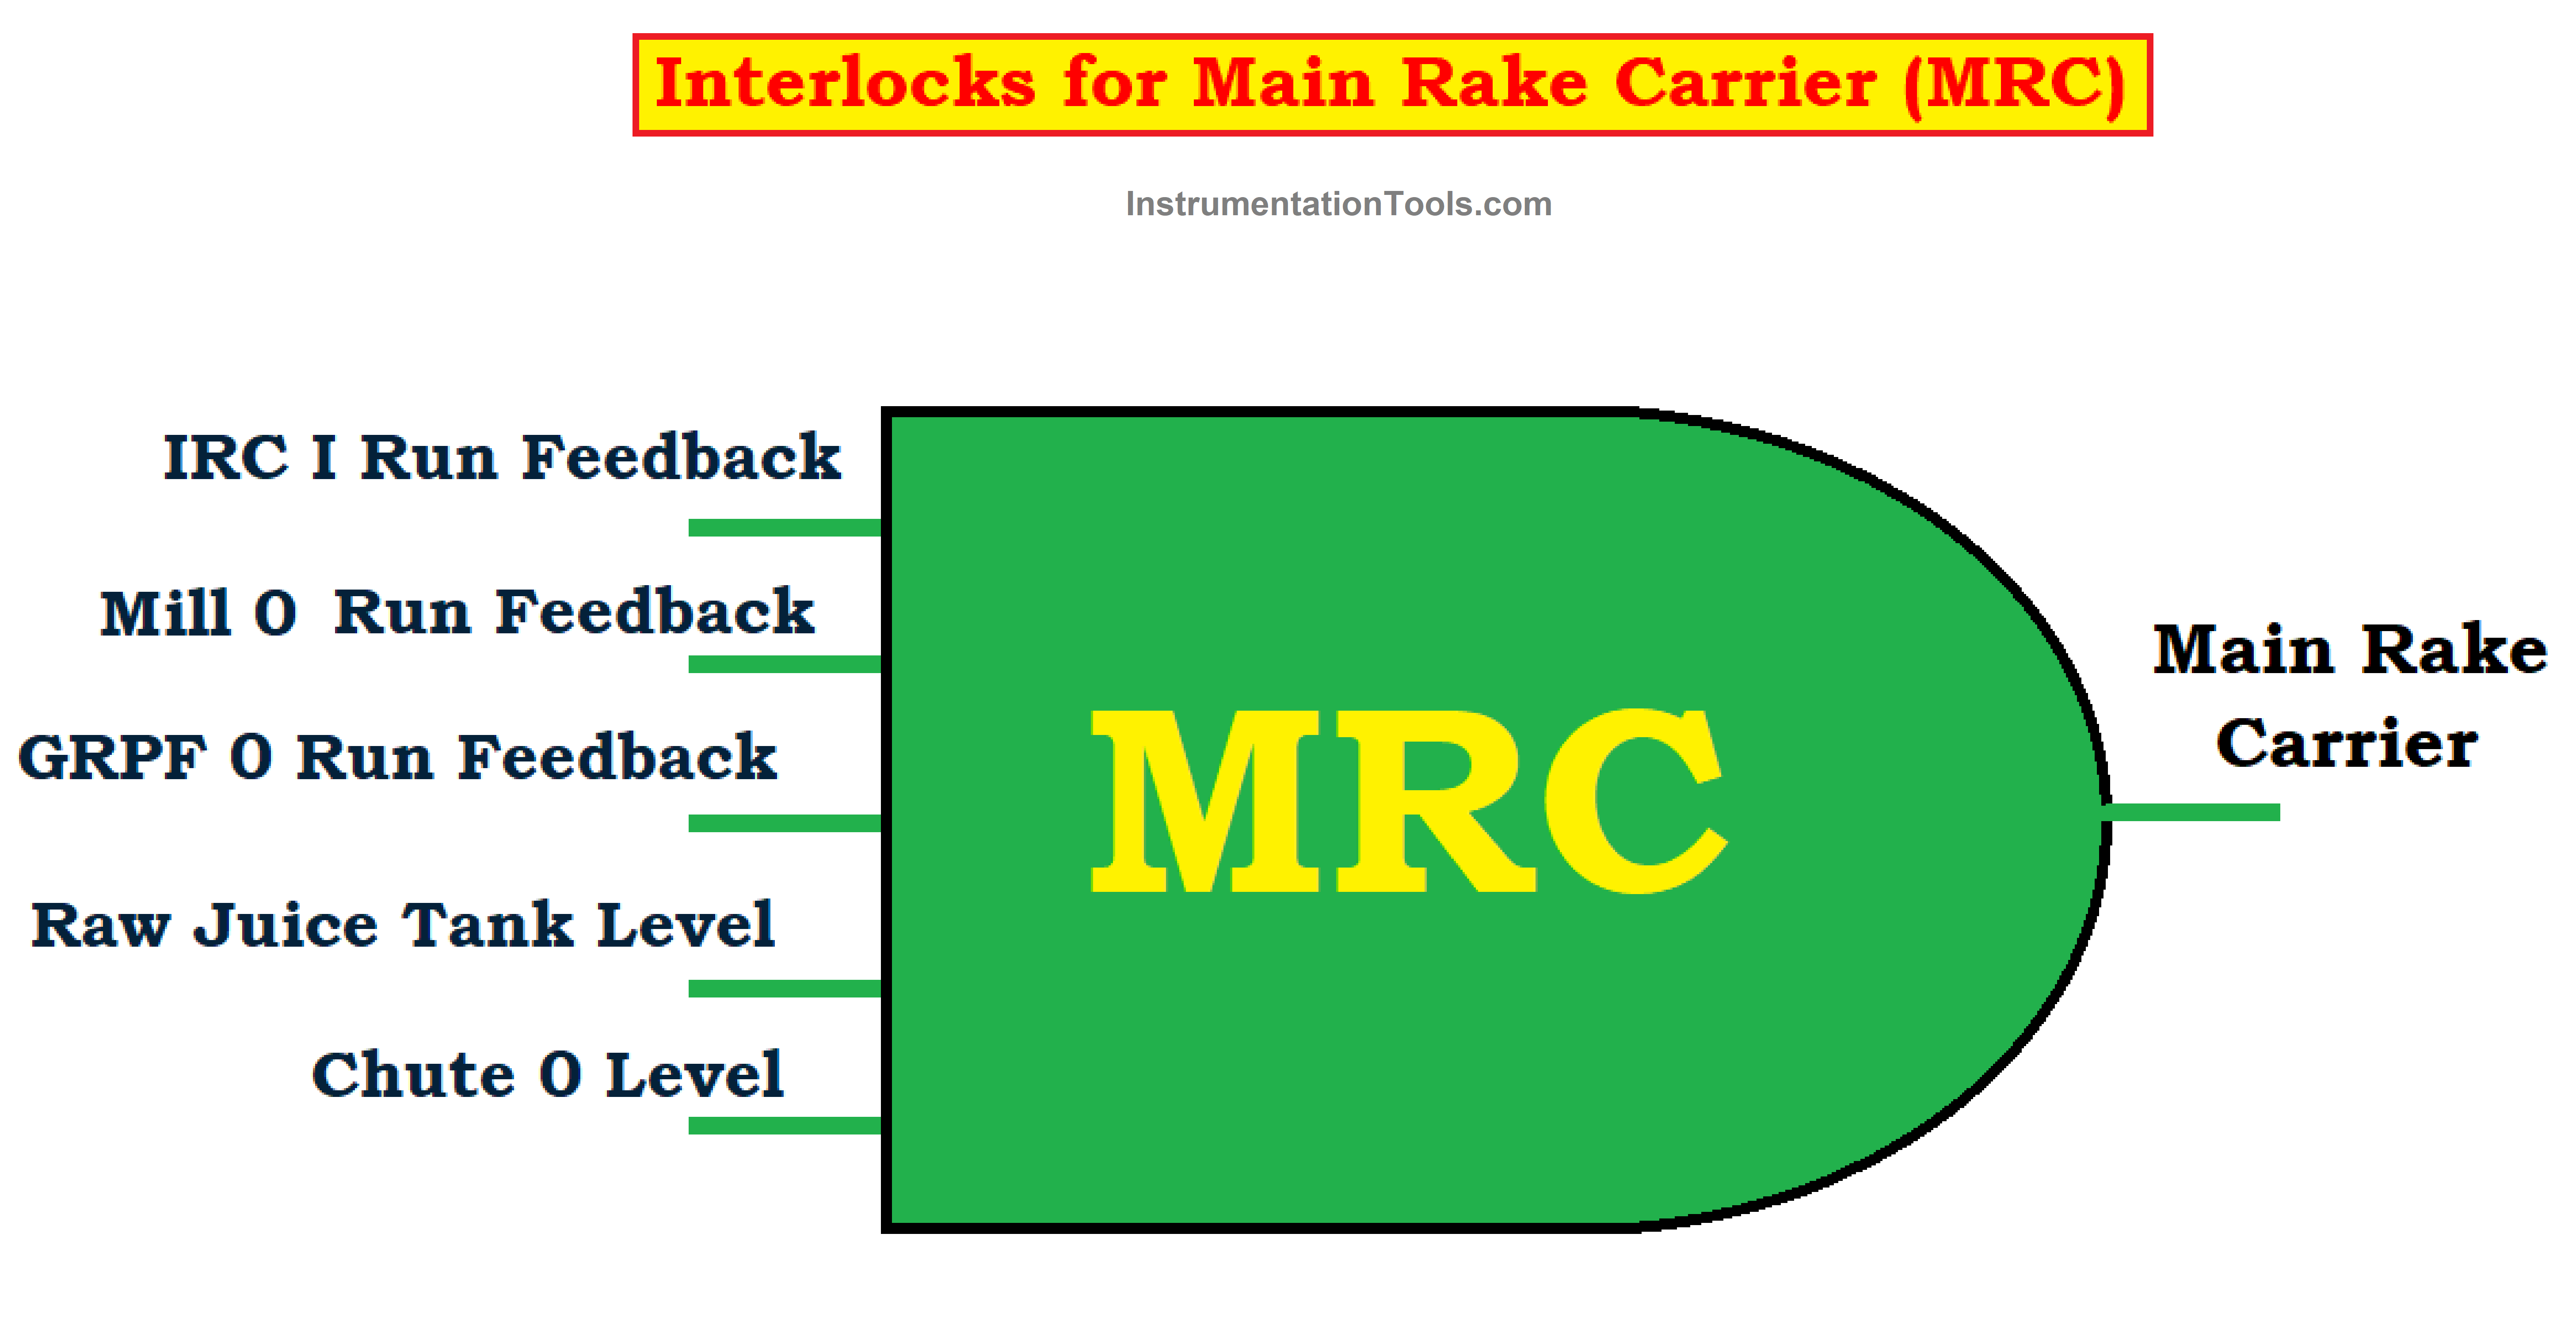 Interlocks for Main Rake Carrier (MRC)